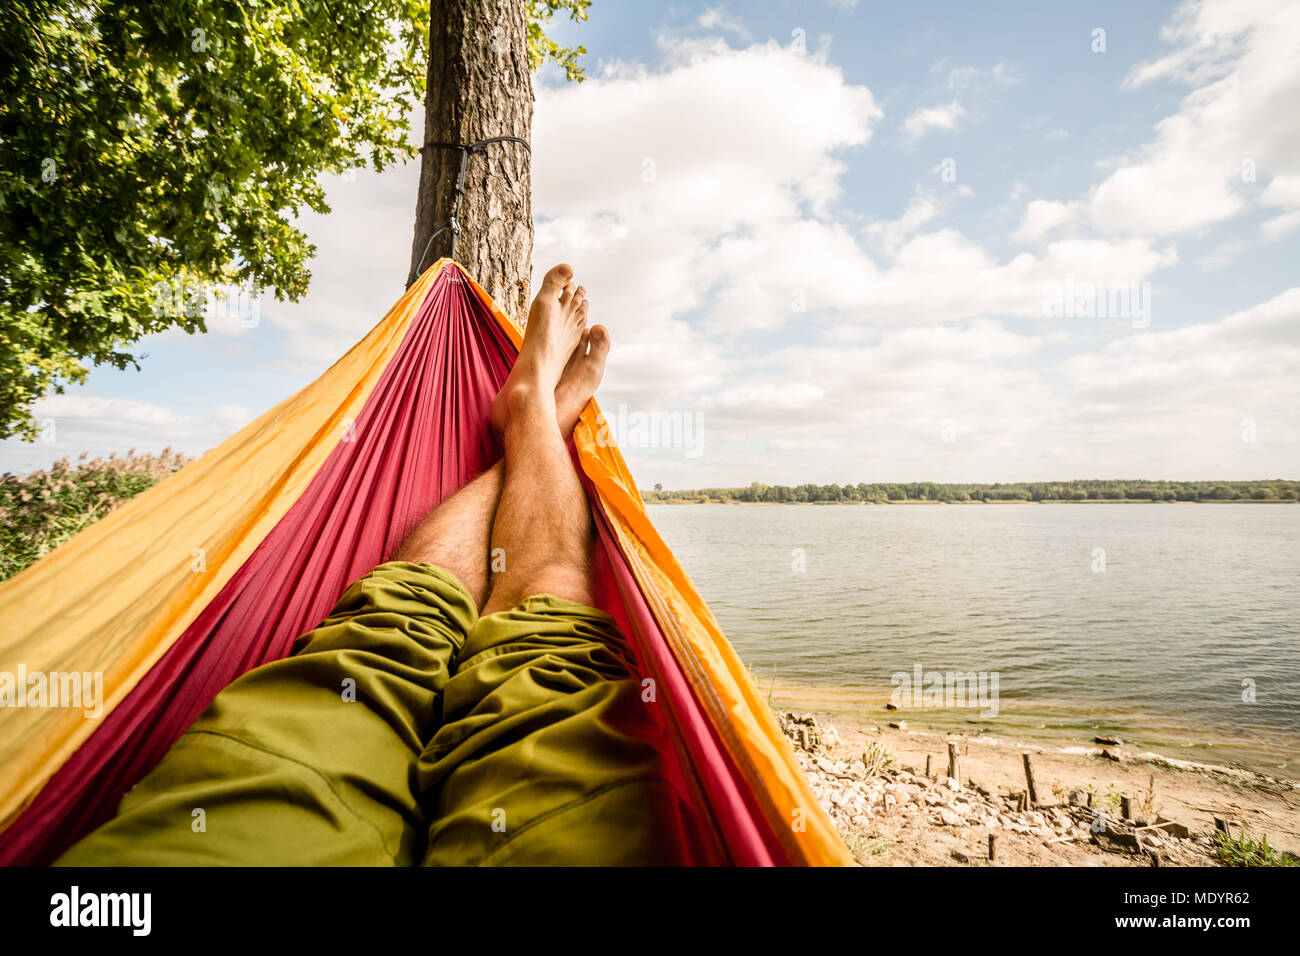 Relaxen in der Hängematte am Strand unter einem Baum, Sommer Tag. Barfuß Mann in der Hängematte, auf der Suche nach einem See, inspirierende Landschaft Stockfoto